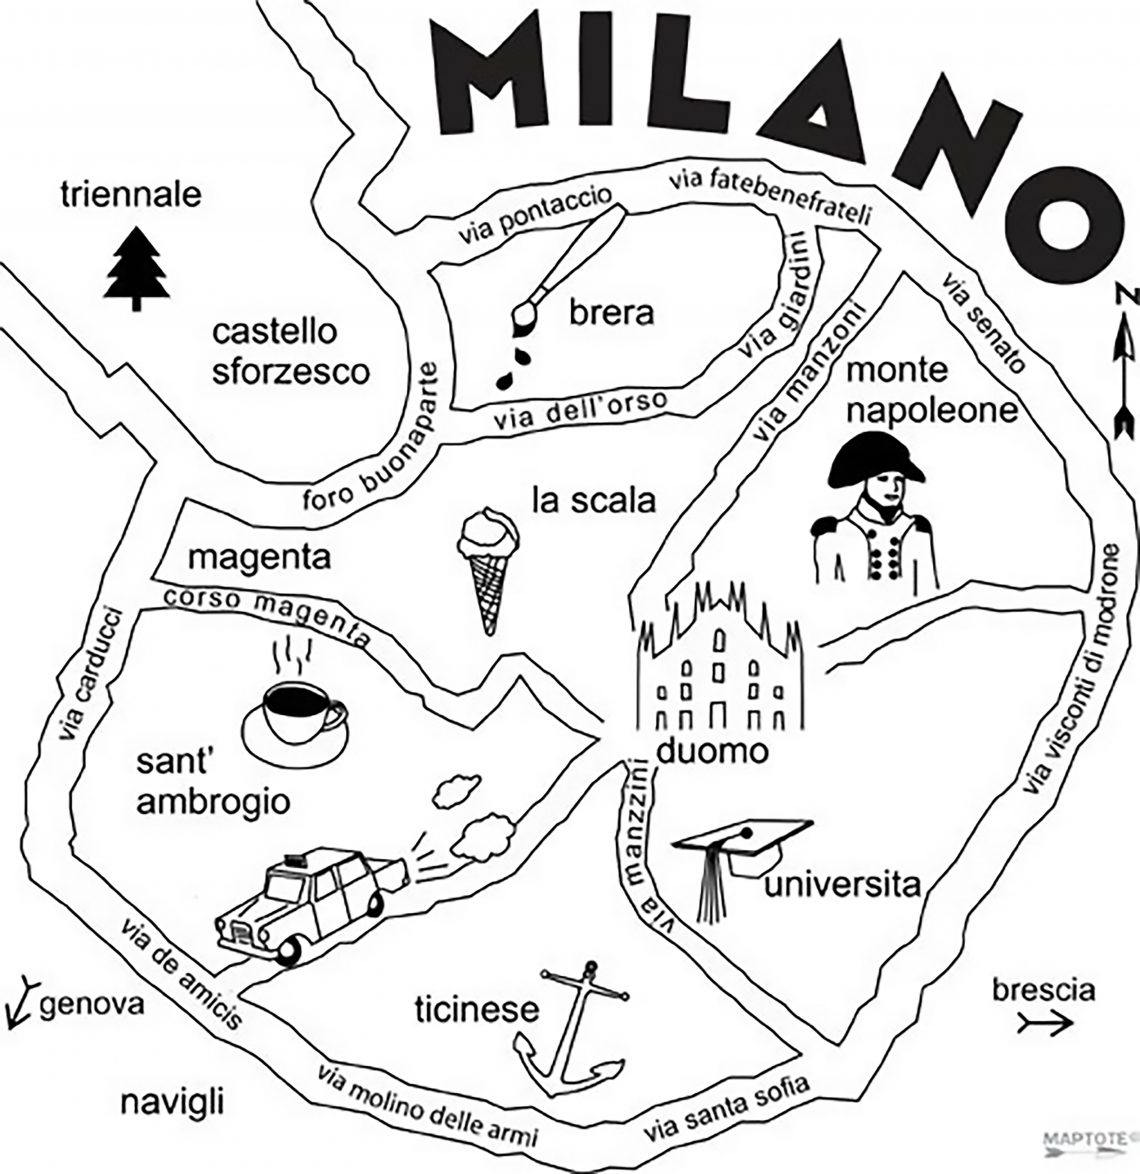 Milano: la mia nuova vita